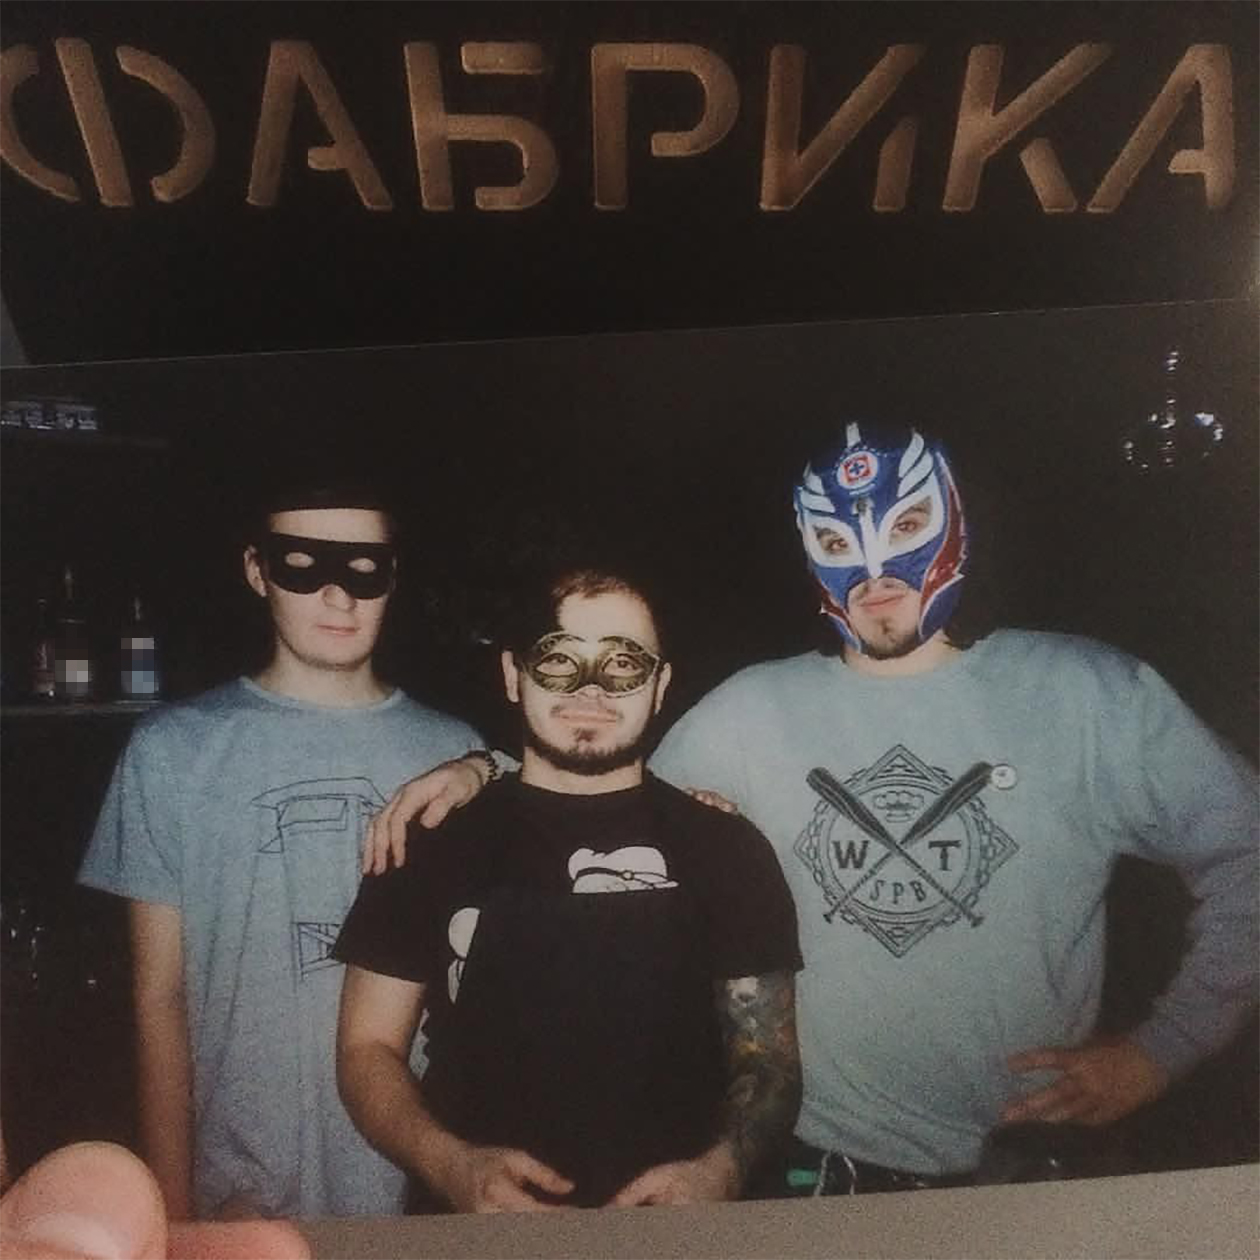 Одно из первых фото в баре: слева стоит арт⁠-⁠директор Виталя, в центре я, а справа бармен Сережа